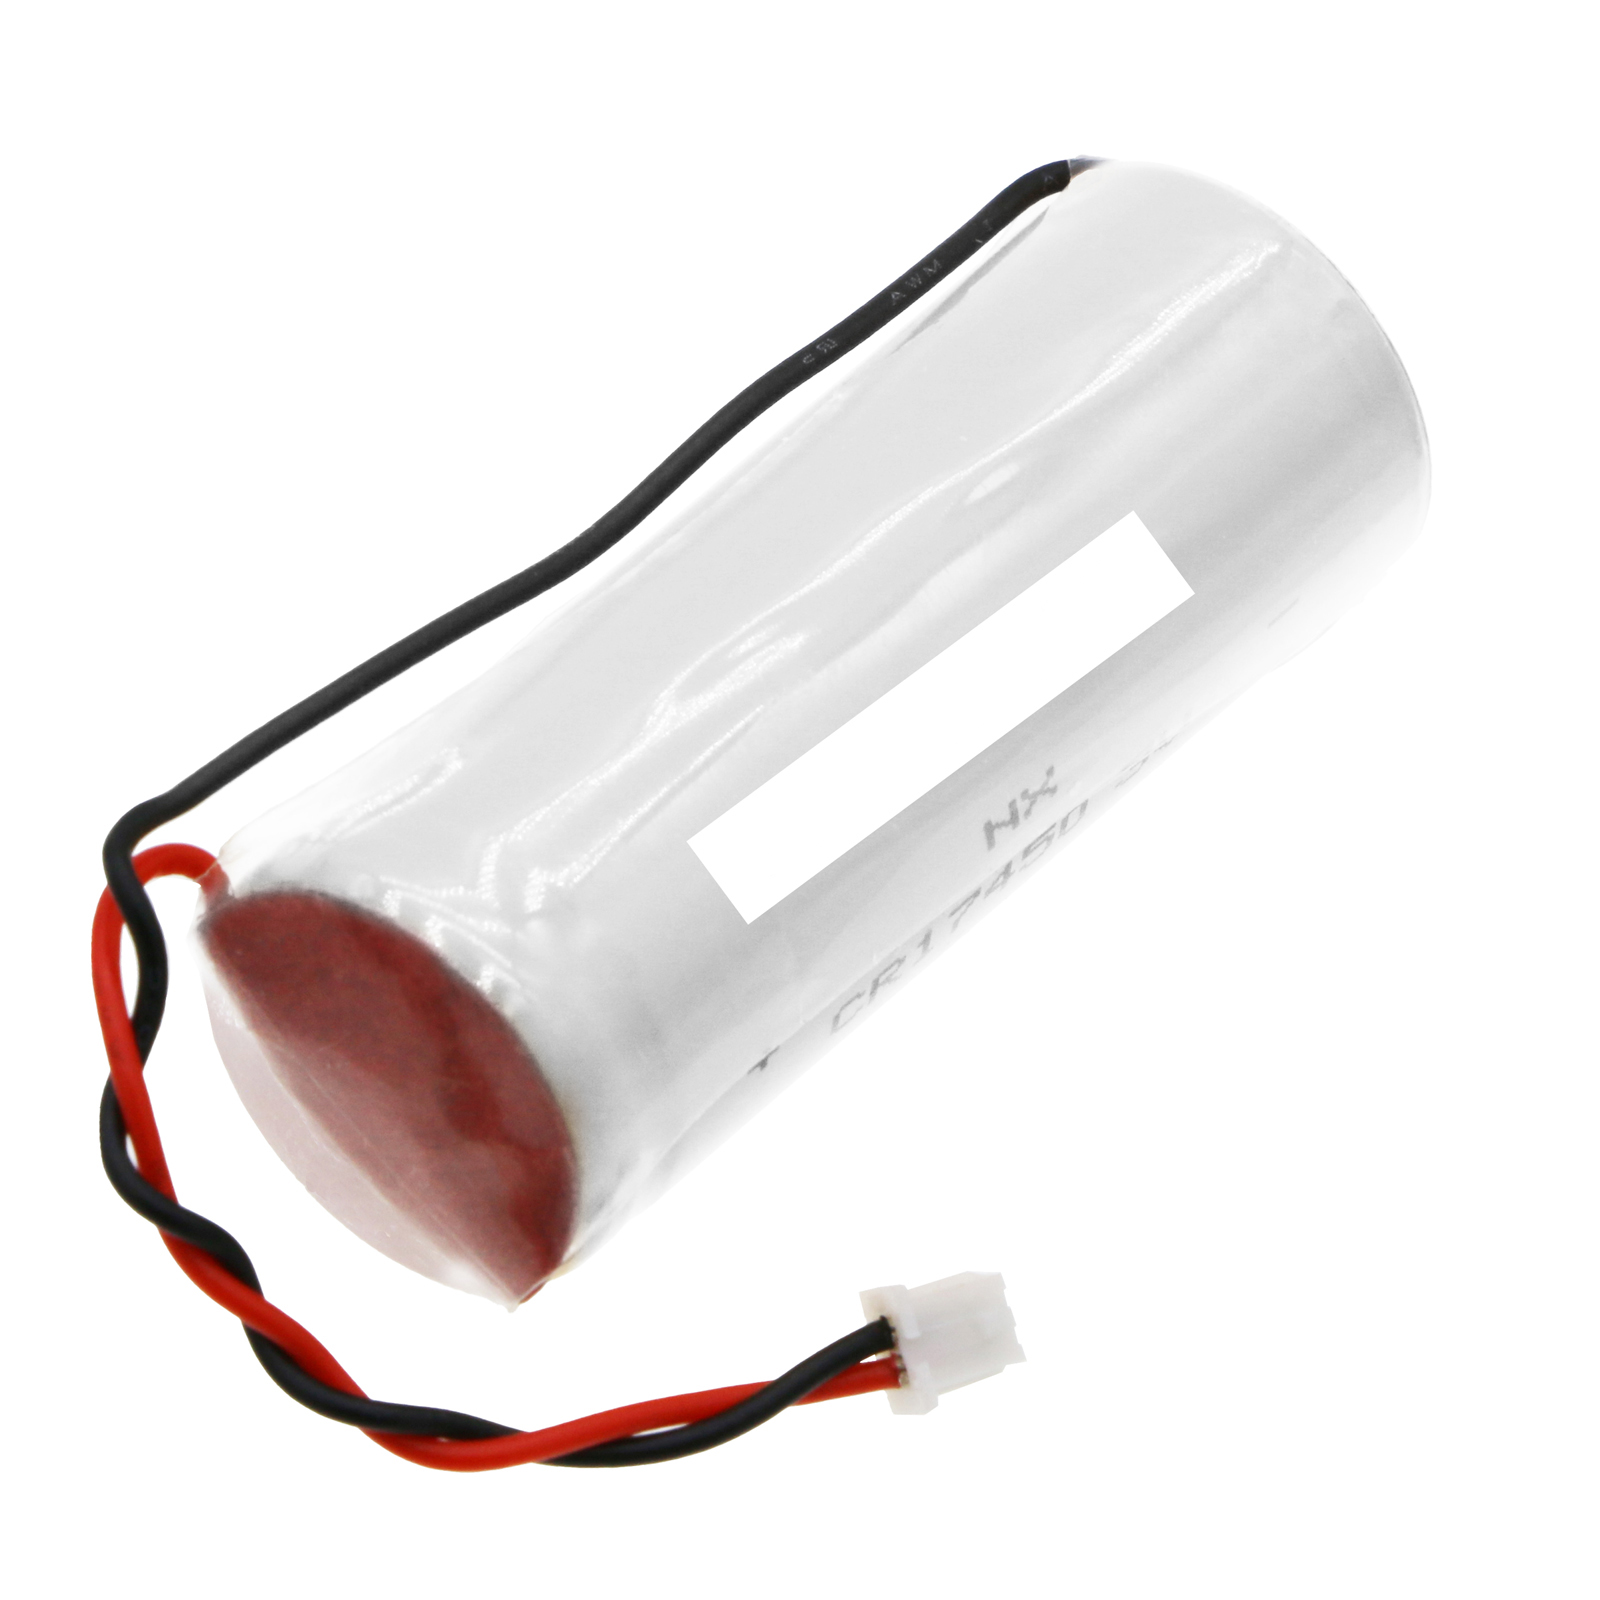 Synergy Digital Emergency Lighting Battery, Compatible with Inovonics BAT610 Emergency Lighting Battery (Li-MnO2, 3V, 2200mAh)